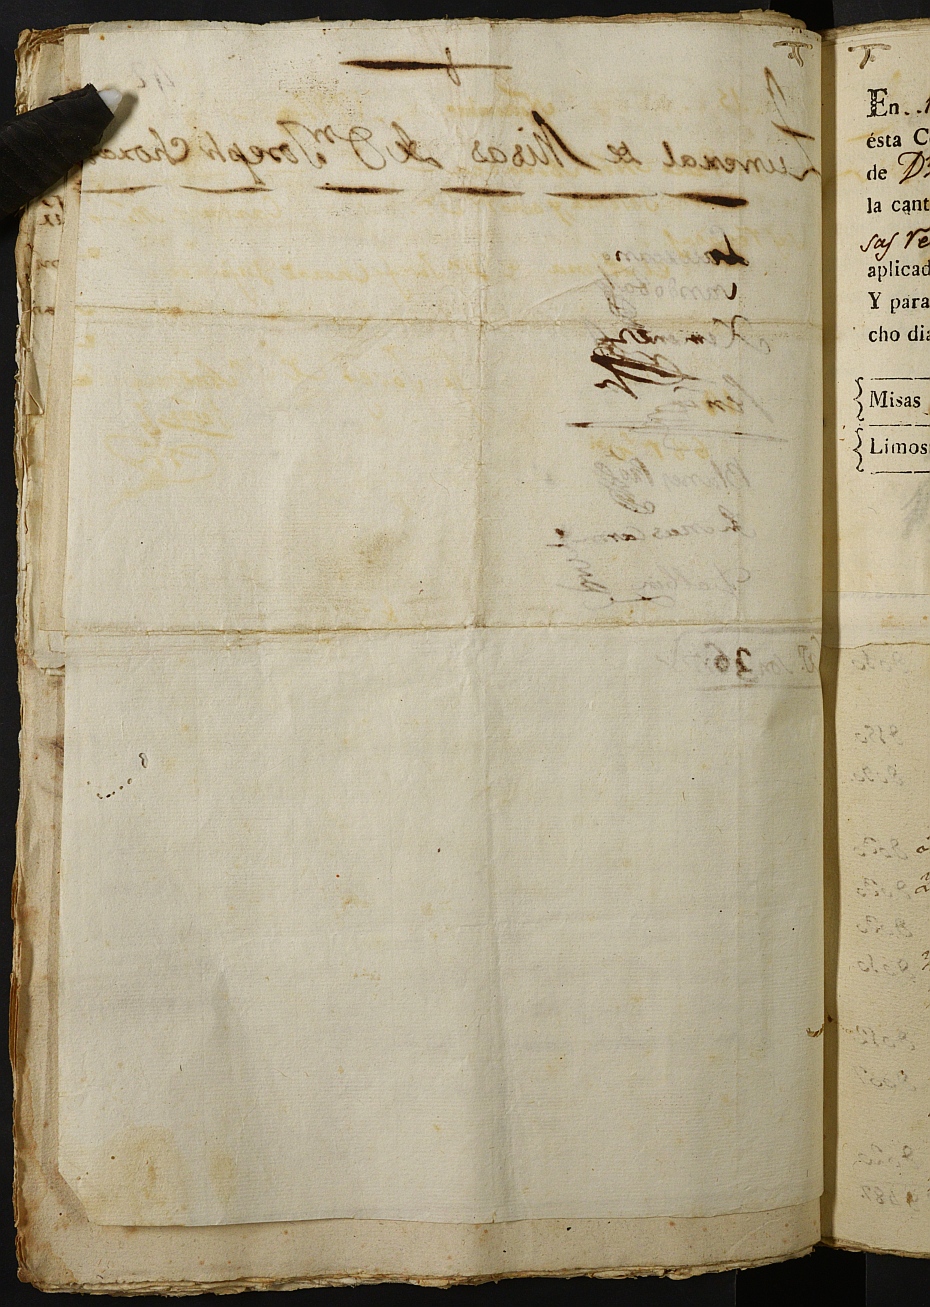 Registro de Agustín Carlos Roca, Cartagena: Escribano de Marina. Años 1798-1800.